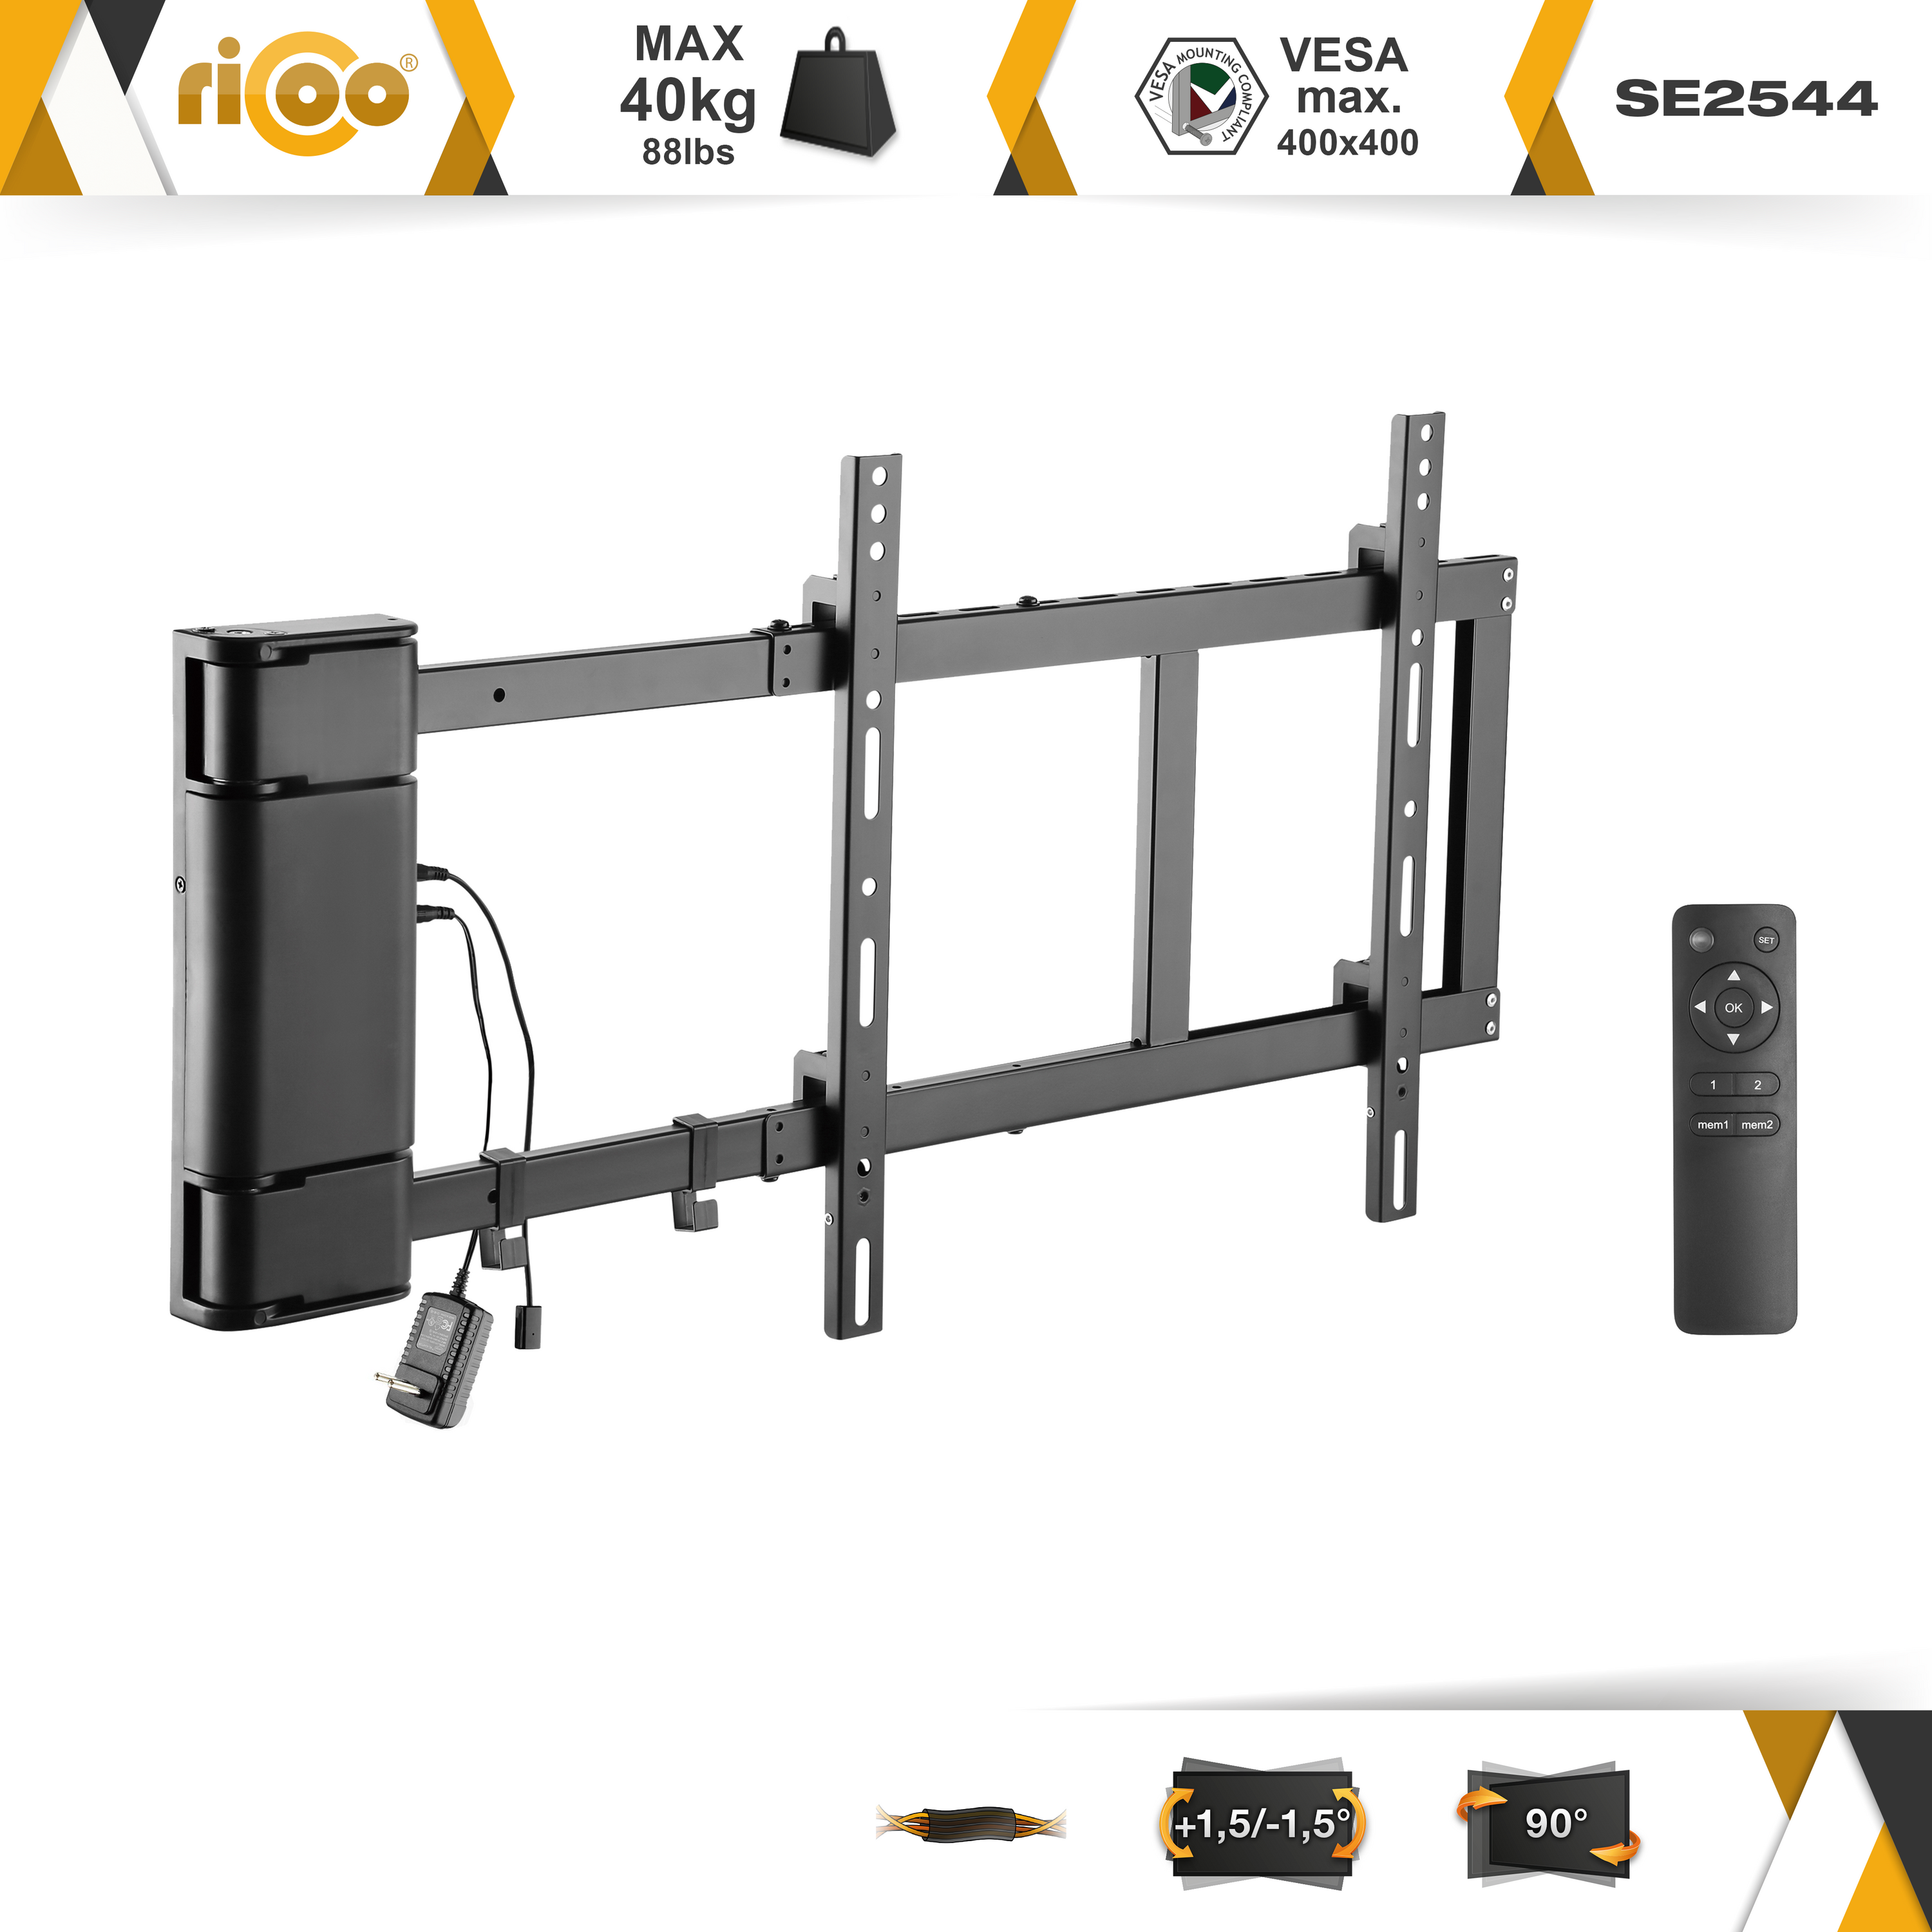 RICOO SE2544 elektrisch schwenkbar ausklappbar TV universal 400 Fernseher Wandhalterung, bis VESA Halterung 400 Schwarz x